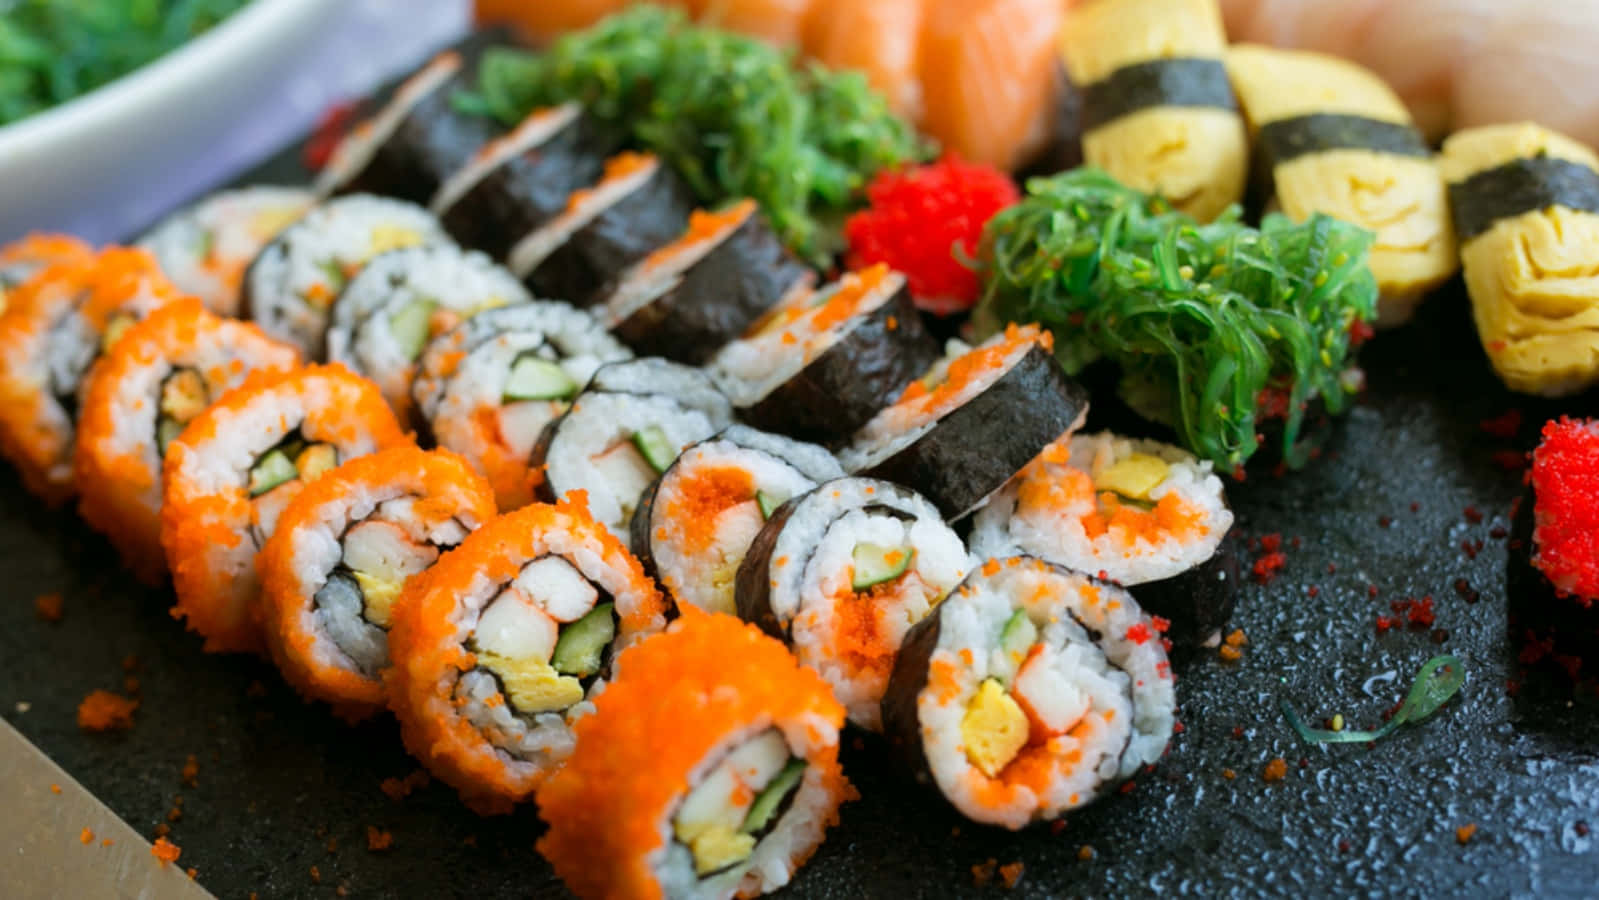 Freshly-made sushi, enjoy!